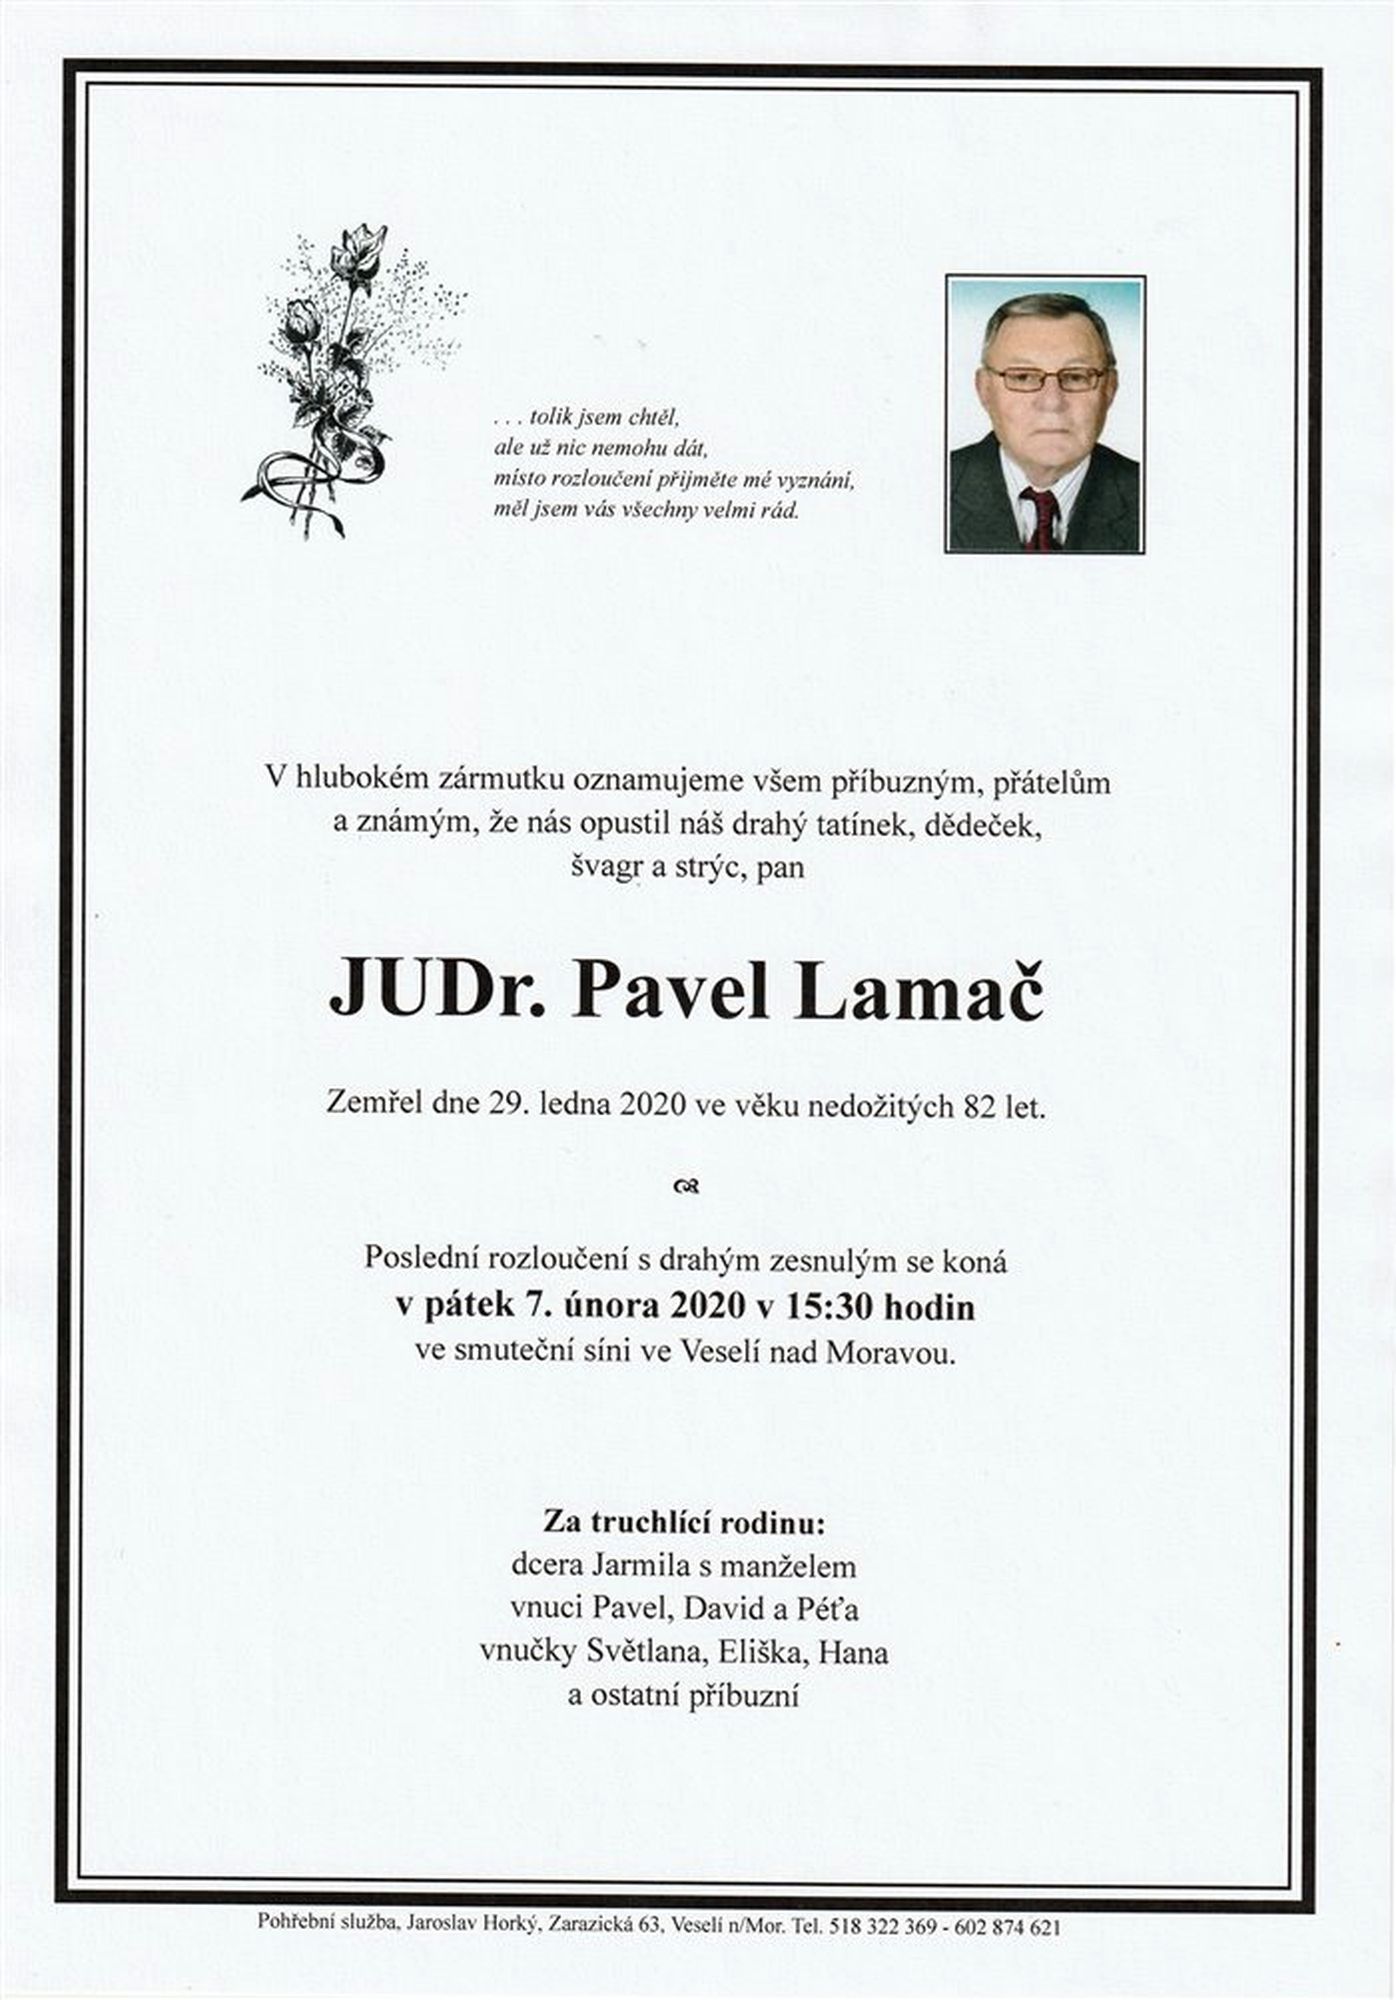 JUDr. Pavel Lamač